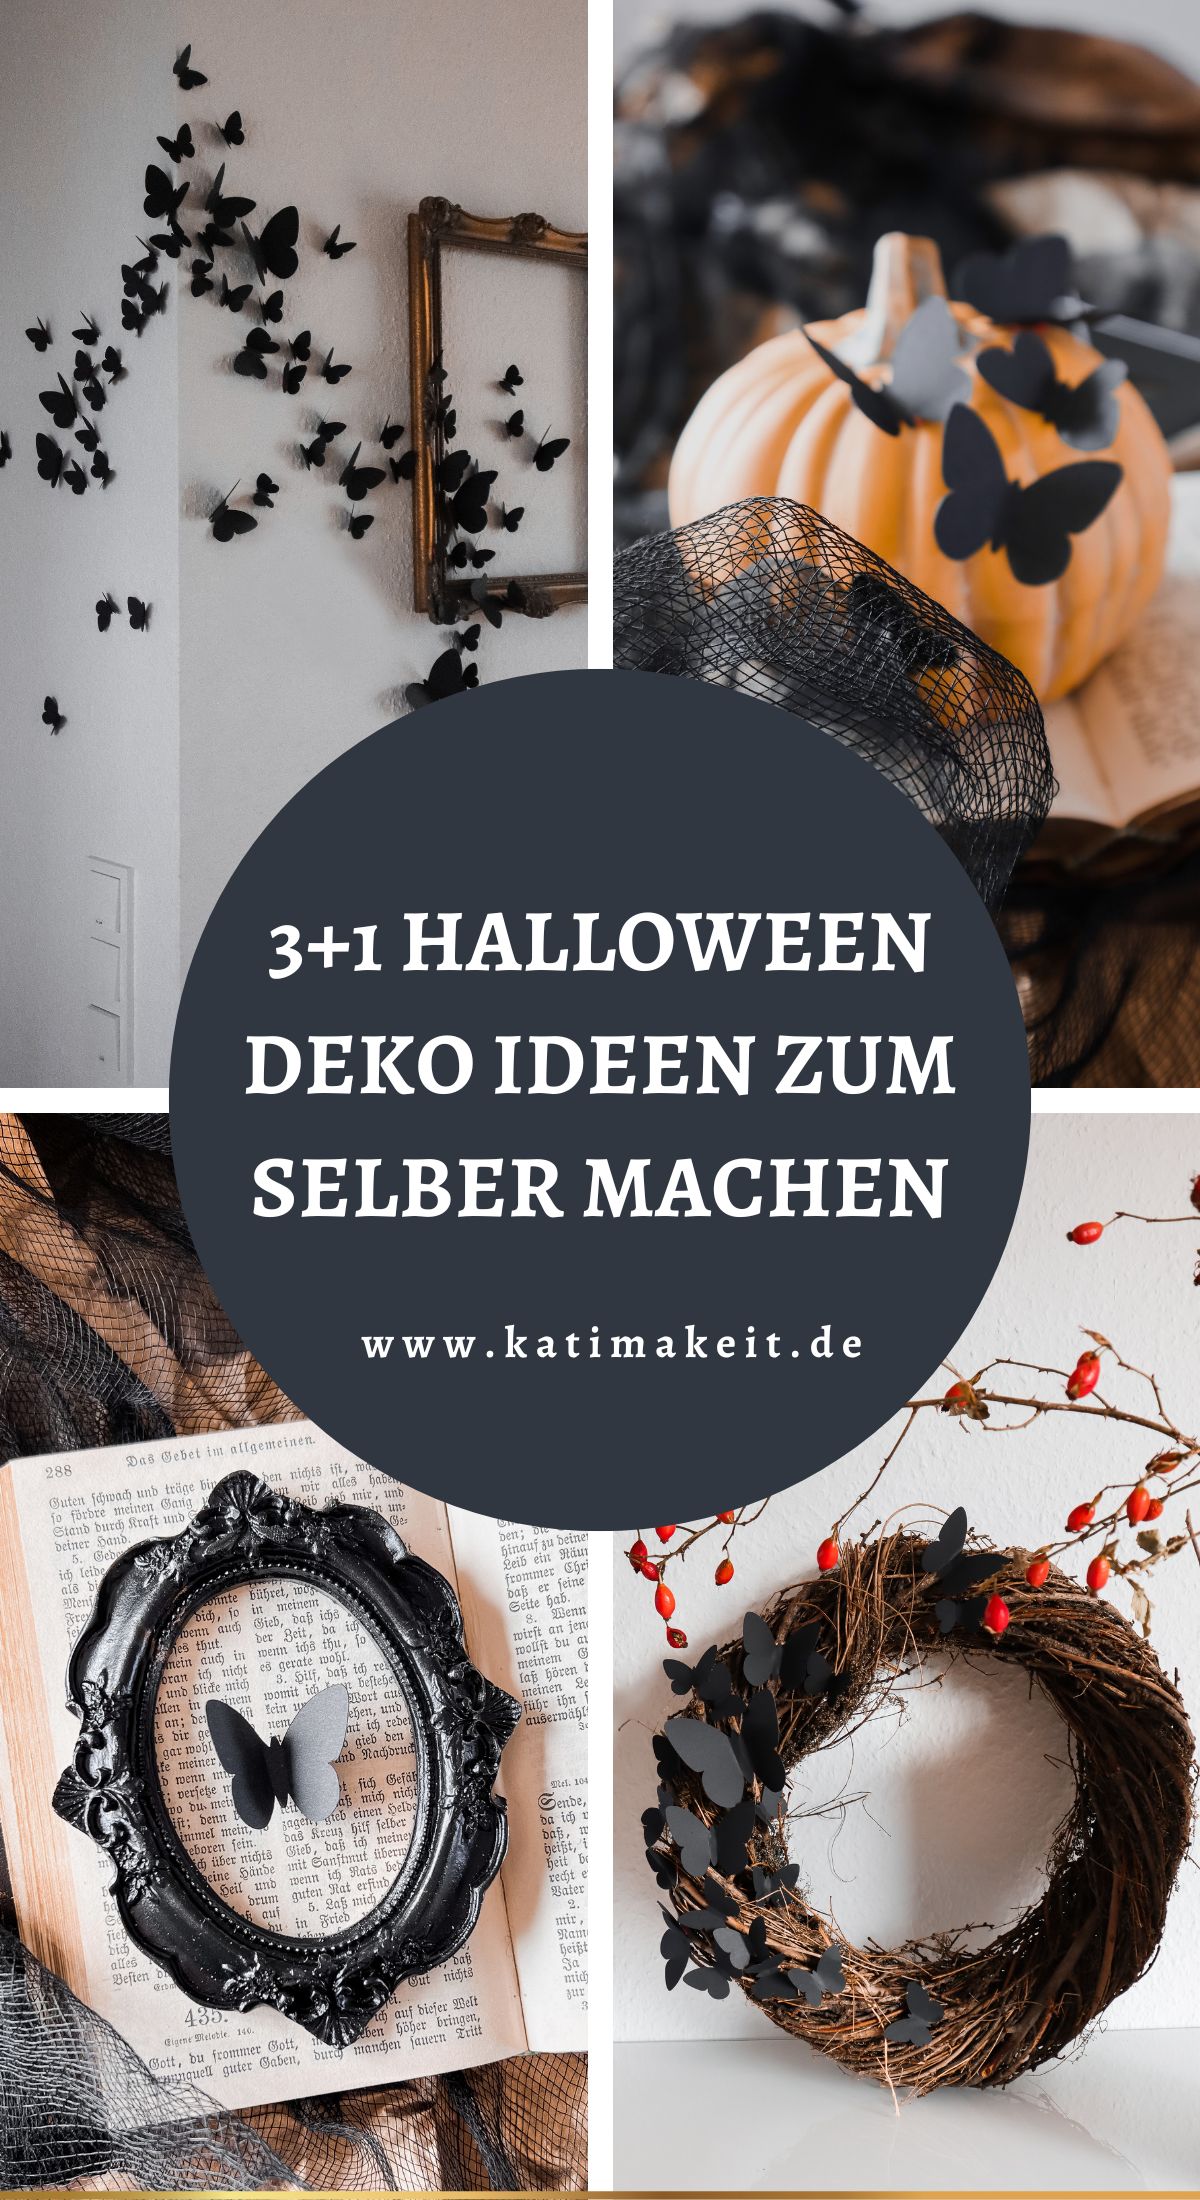 Halloween Deko basteln: 3+1 luxuriöse, aber günstige DIY Ideen für deine Halloween Deko. Hier gibt's die schaurig schönen DIY Anleitungen für die Geisterstunde.